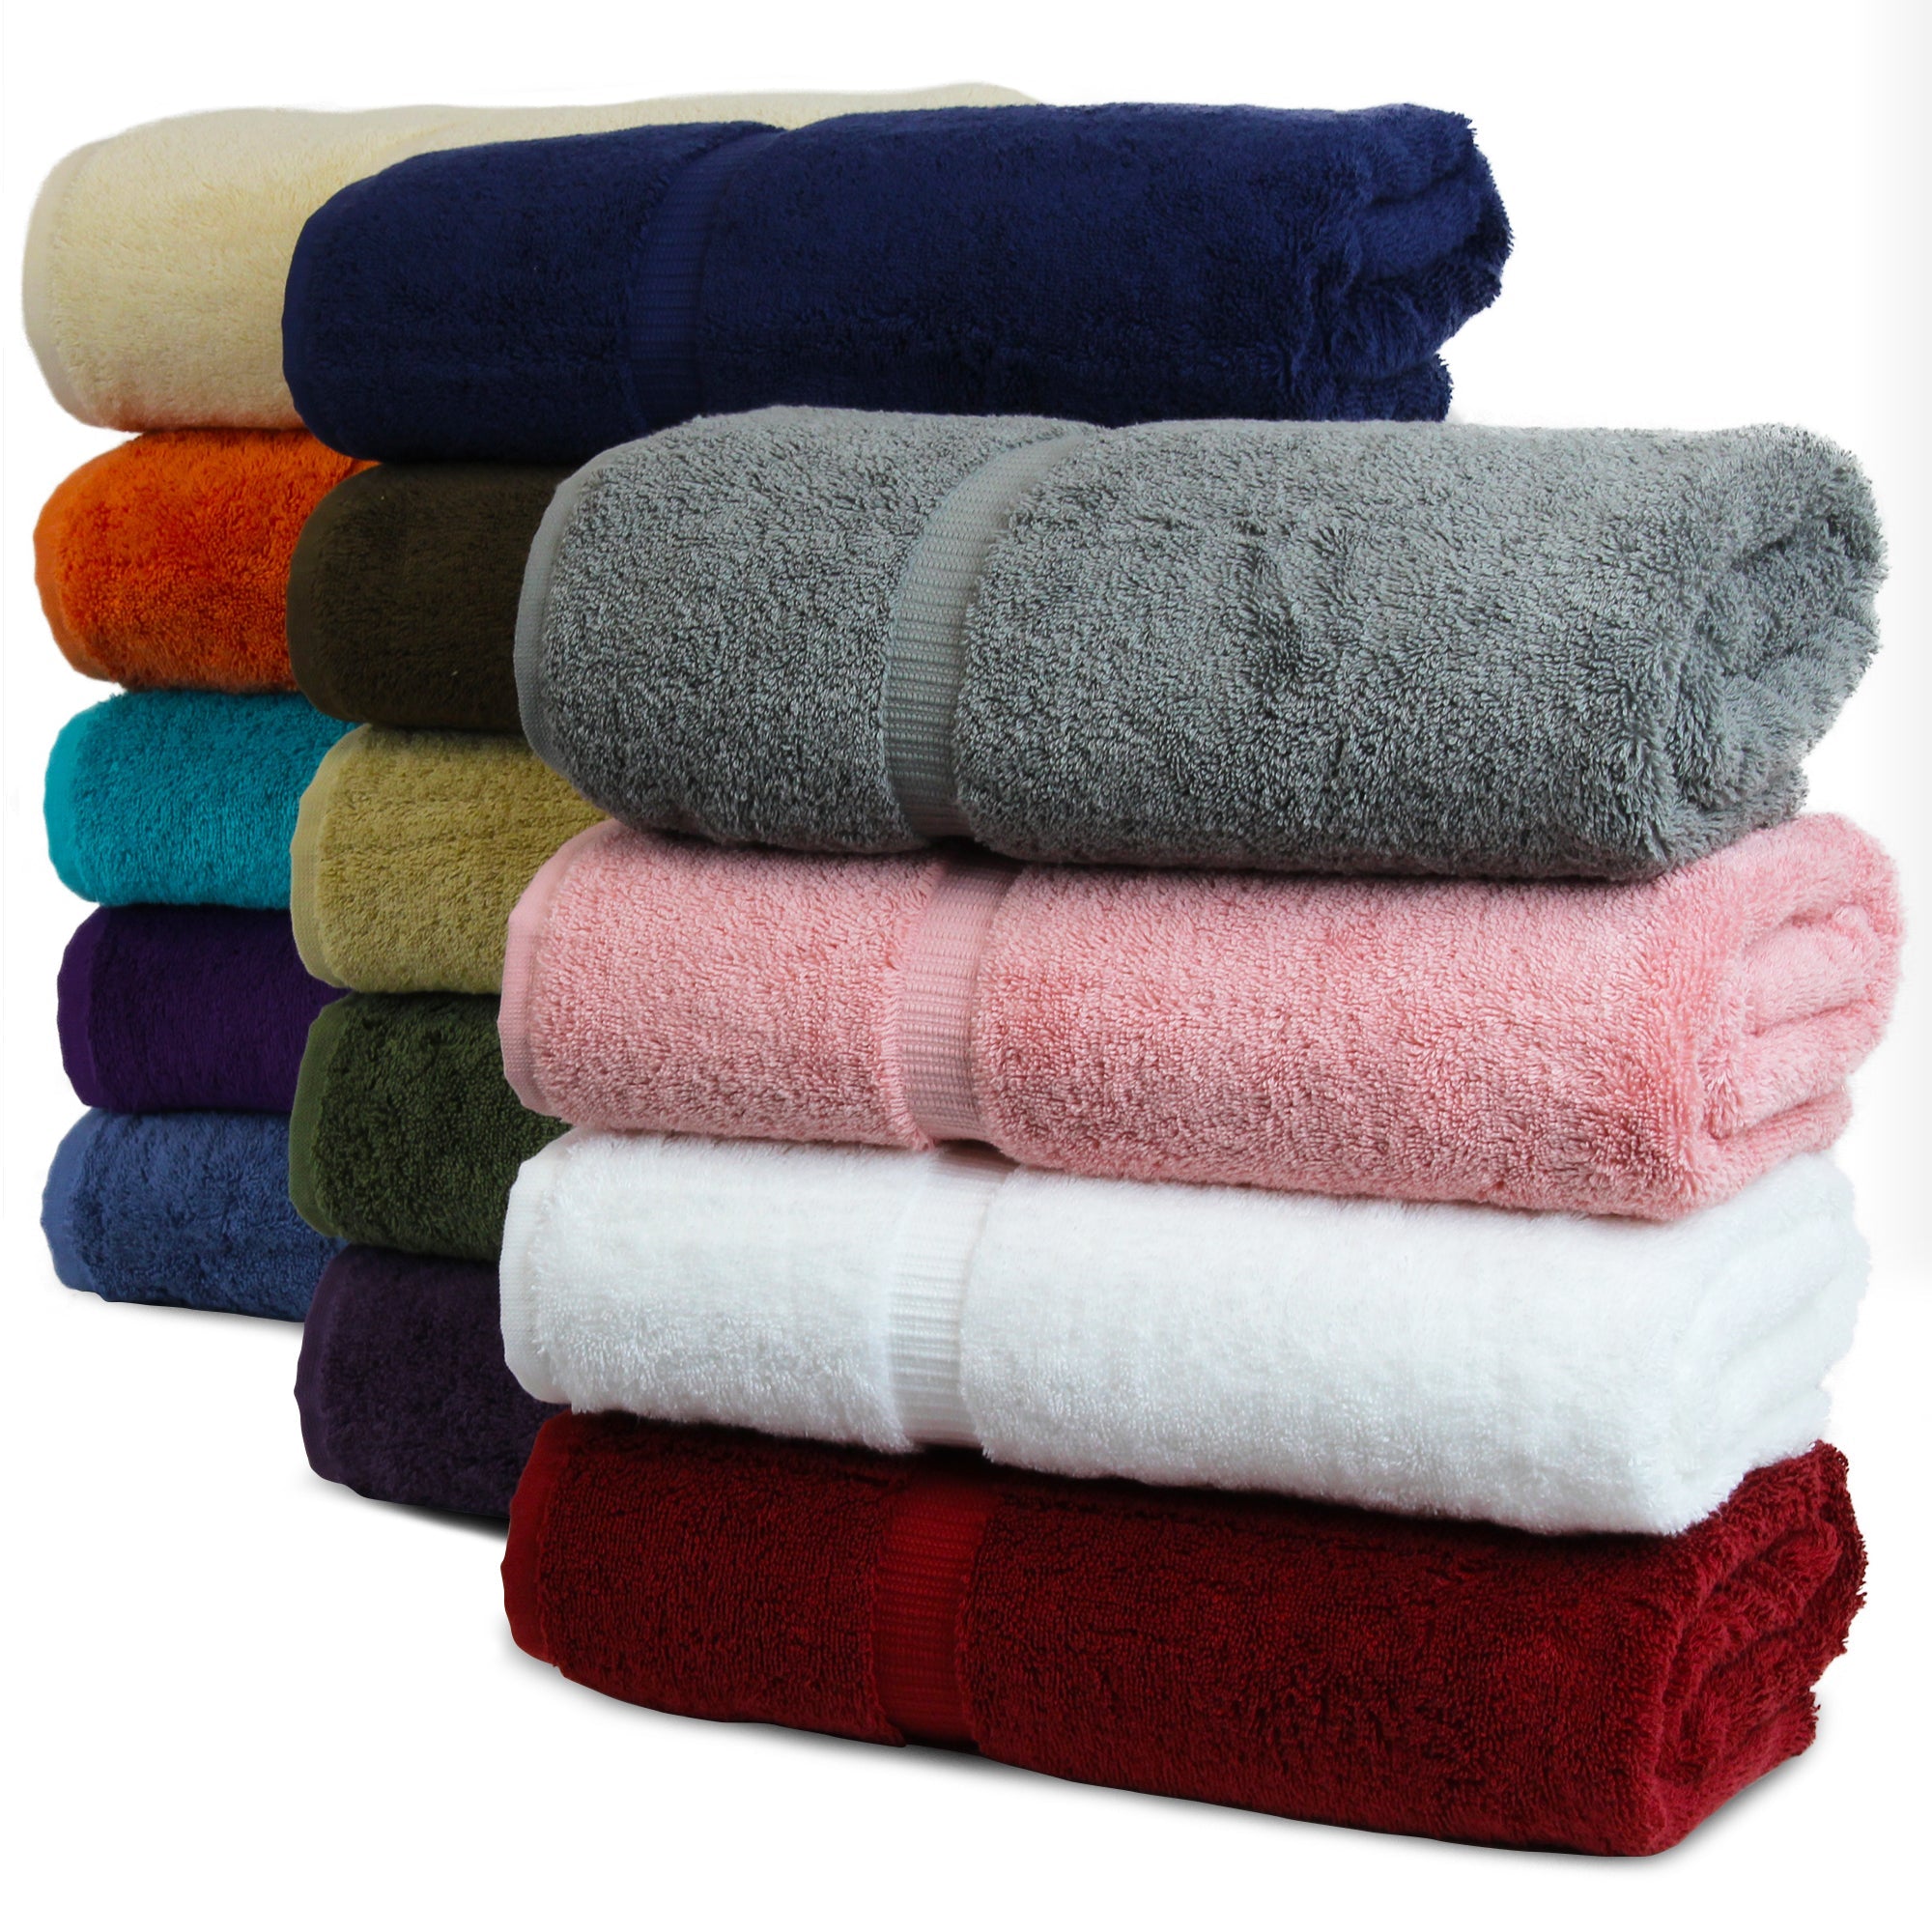  Luxury Hotel & Spa 100% Cotton Premium Turkish Bath Towels, 27  x 54'' (Set of 4, Wedgewood) : Home & Kitchen